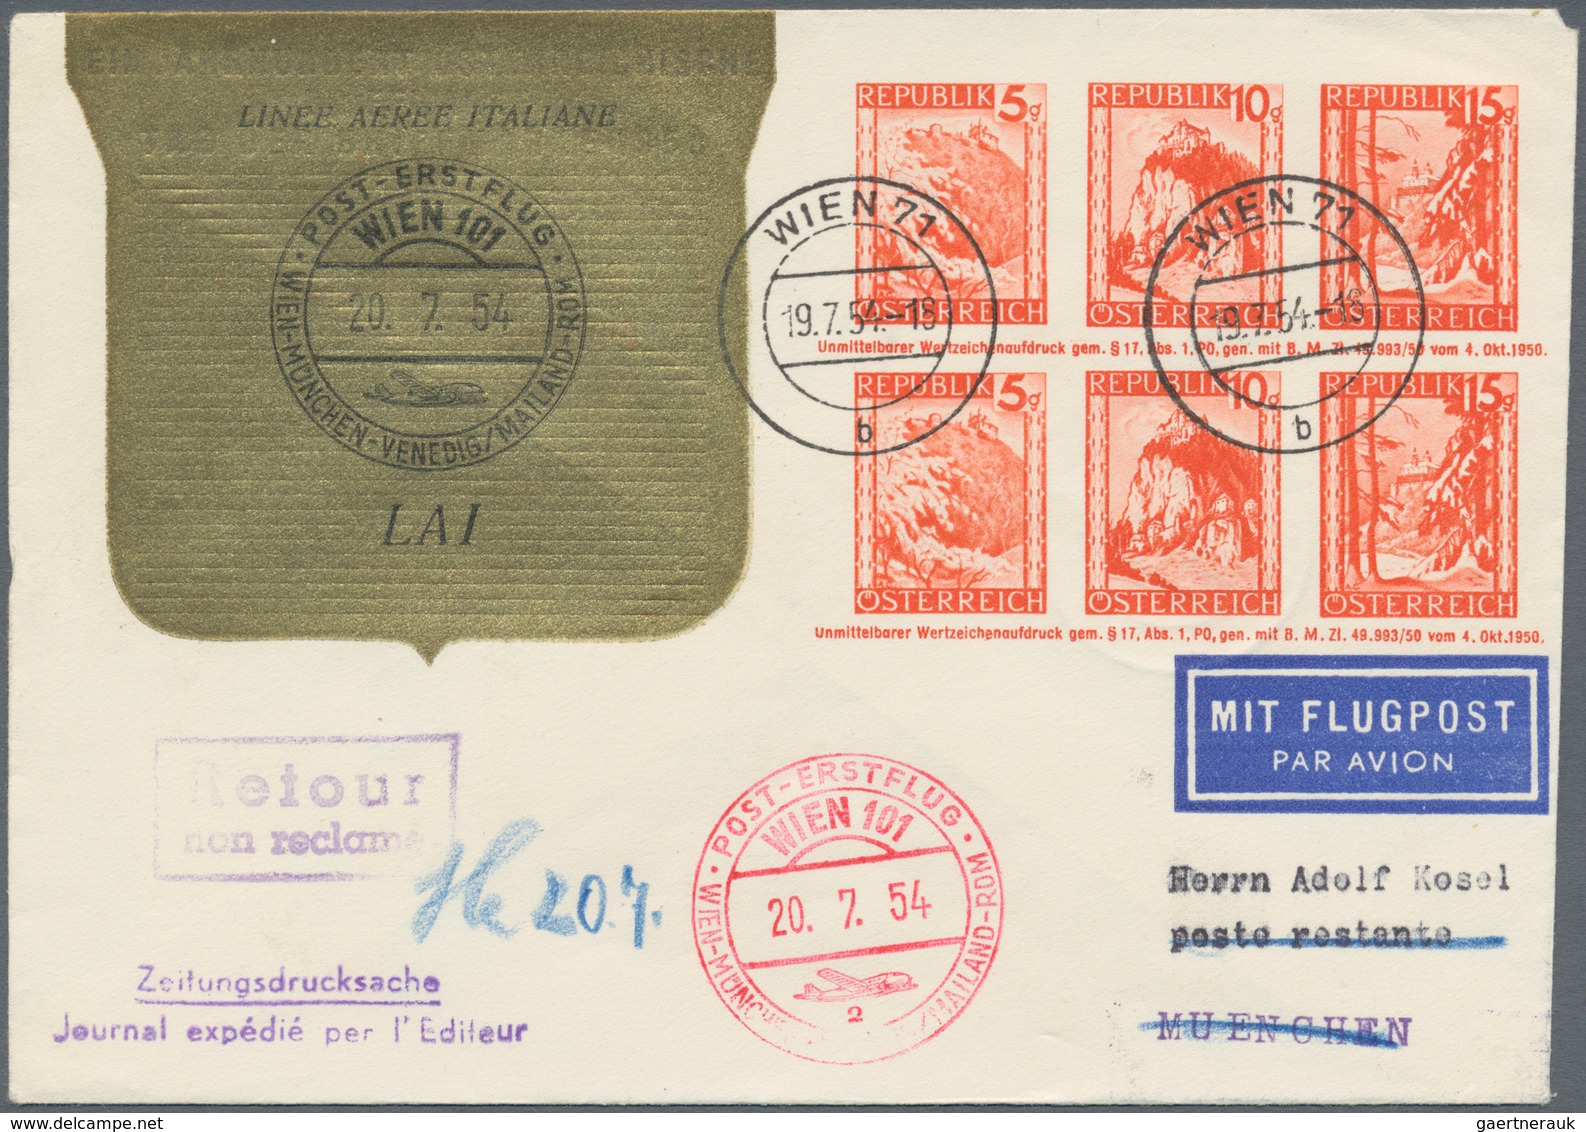 Österreich - Flugpost: 1946/1973, reichhaltige Sammlung mit ca. 630 Flugpostbelegen in 8 Briefealben